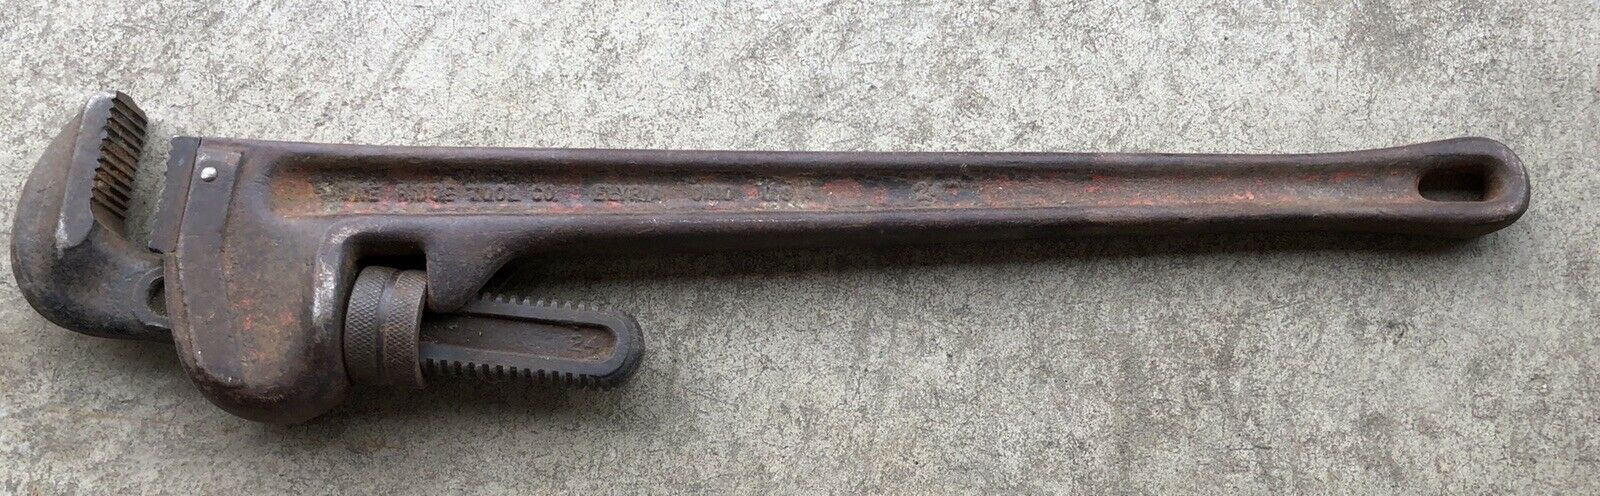 Ridgid 24” Metal Pipe Wrench